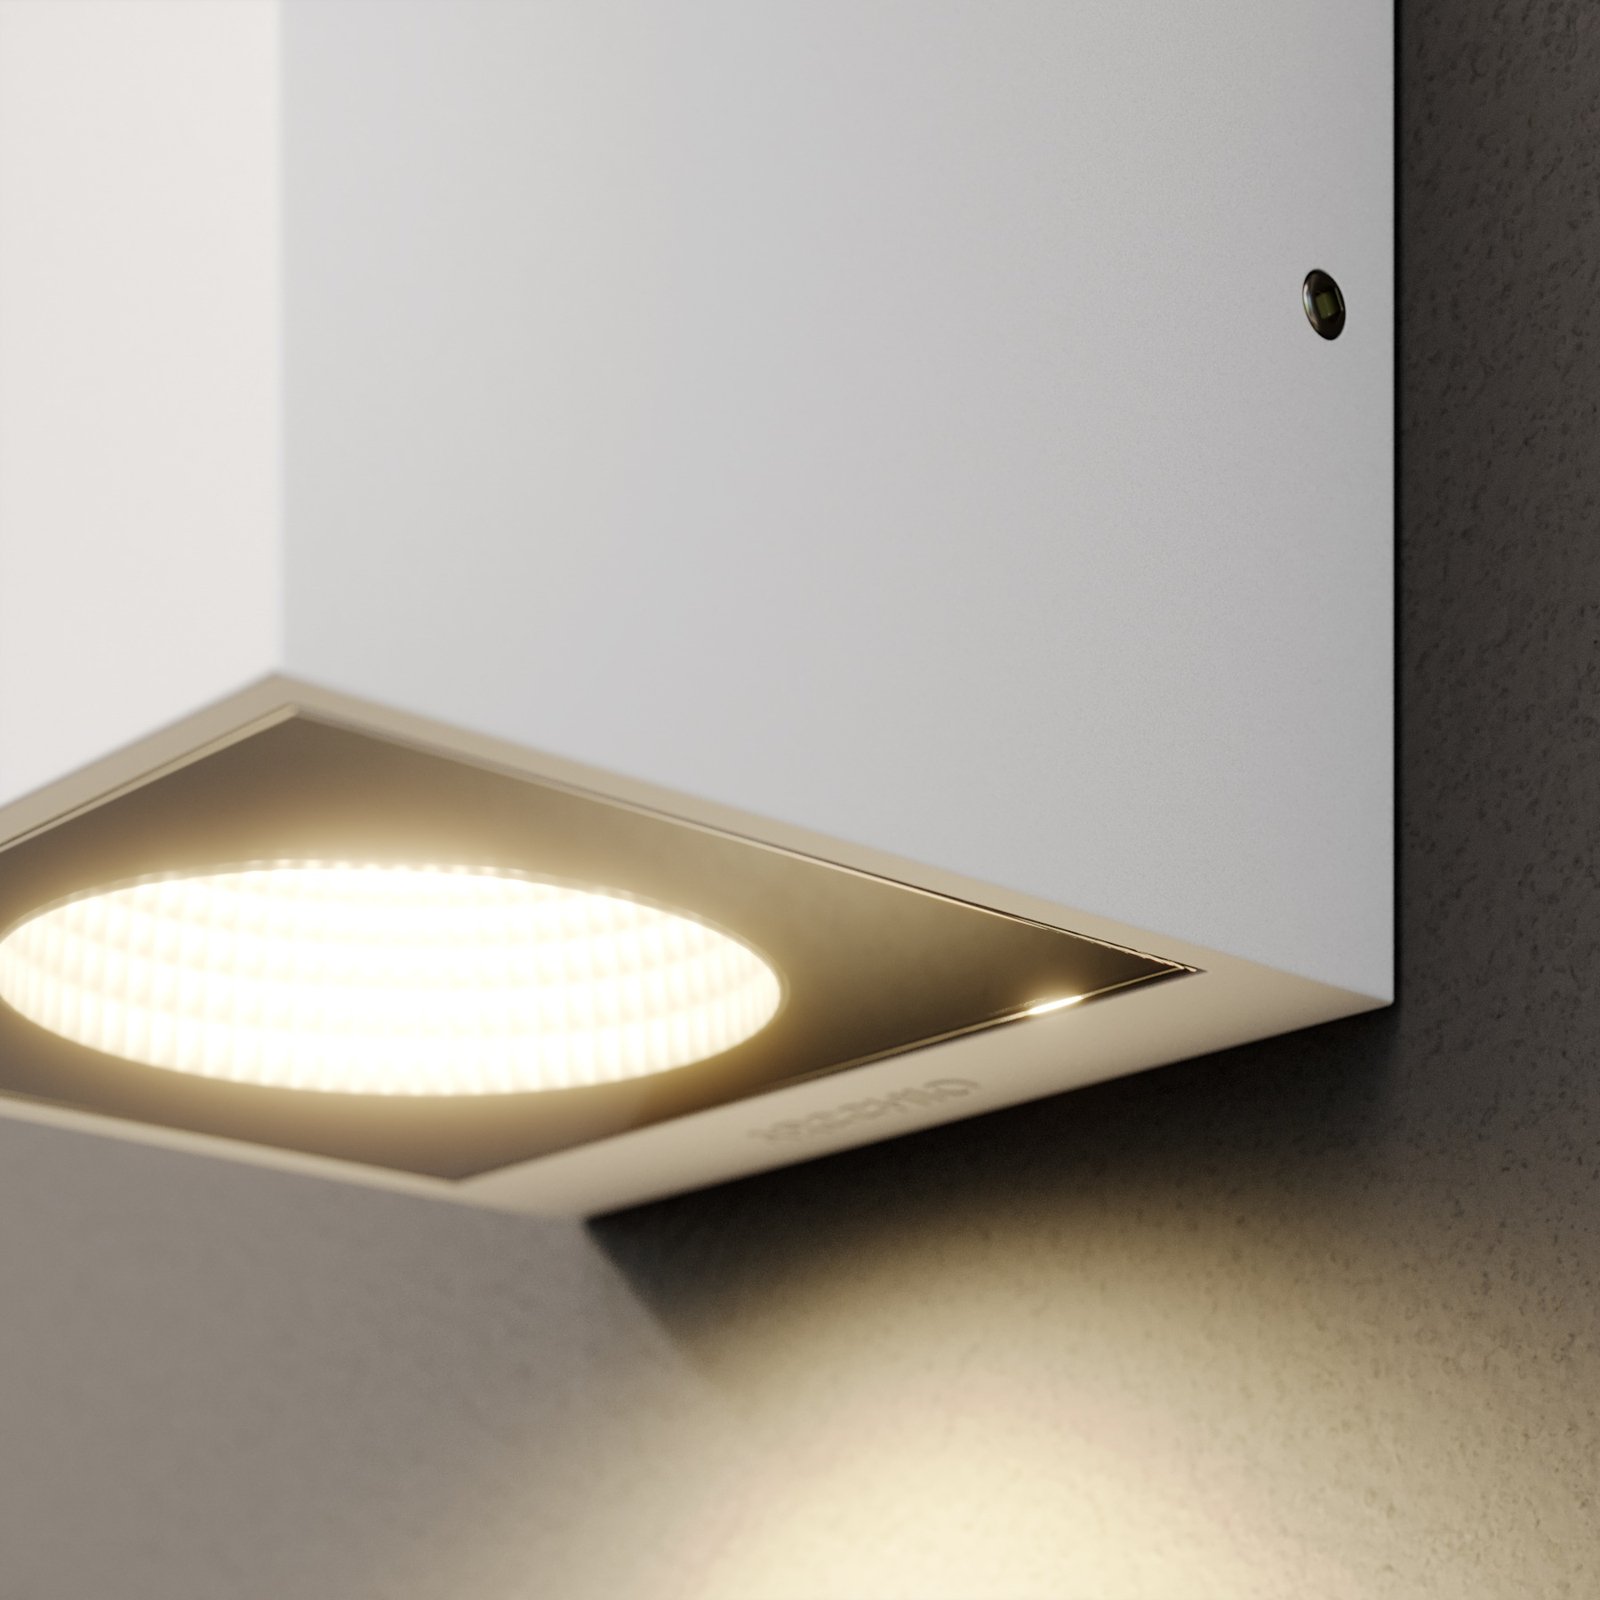 Arcchio Tassnim LED venkovní nástěnné svítidlo bílé 1-light.